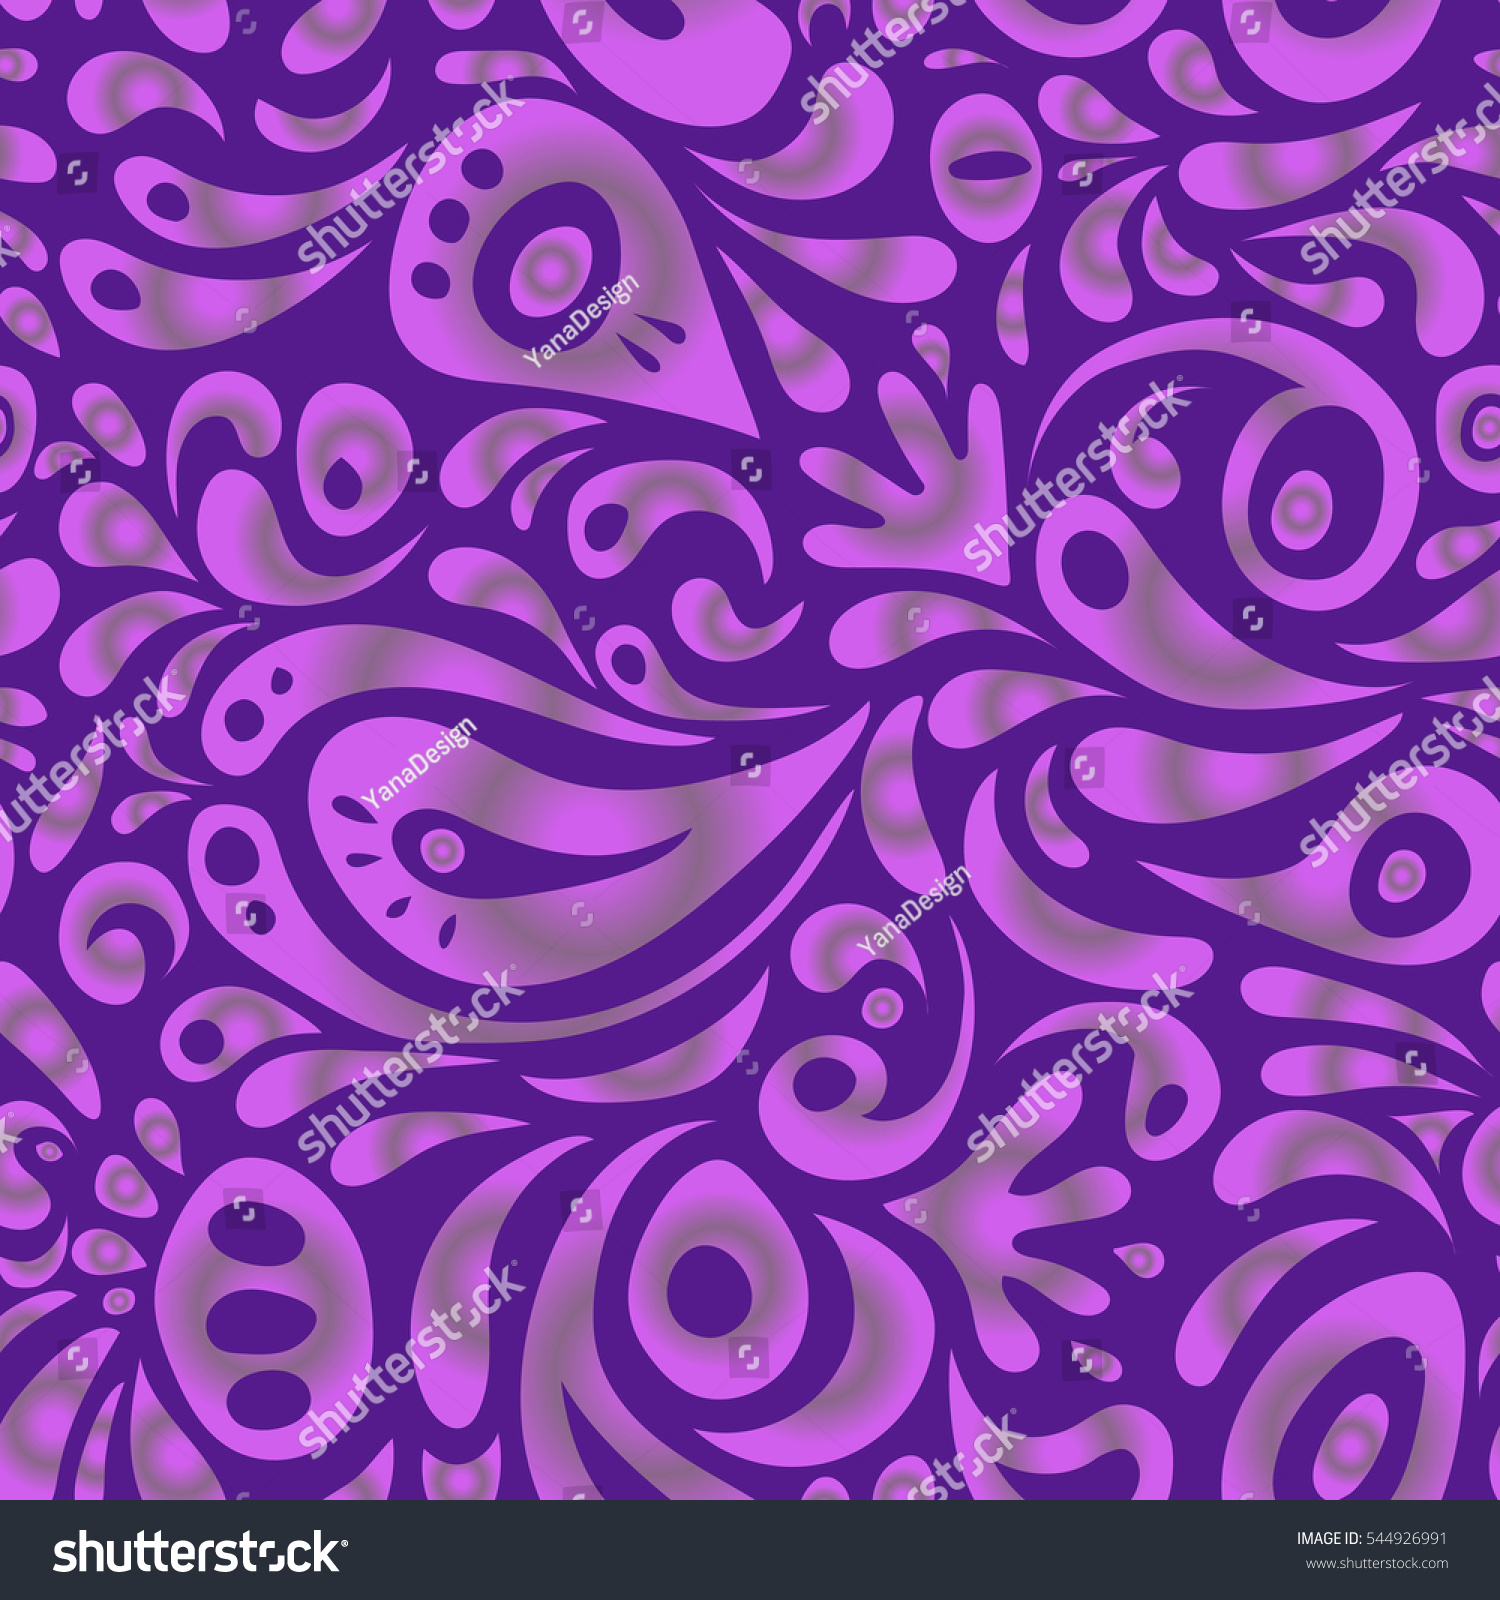 purple victorian background